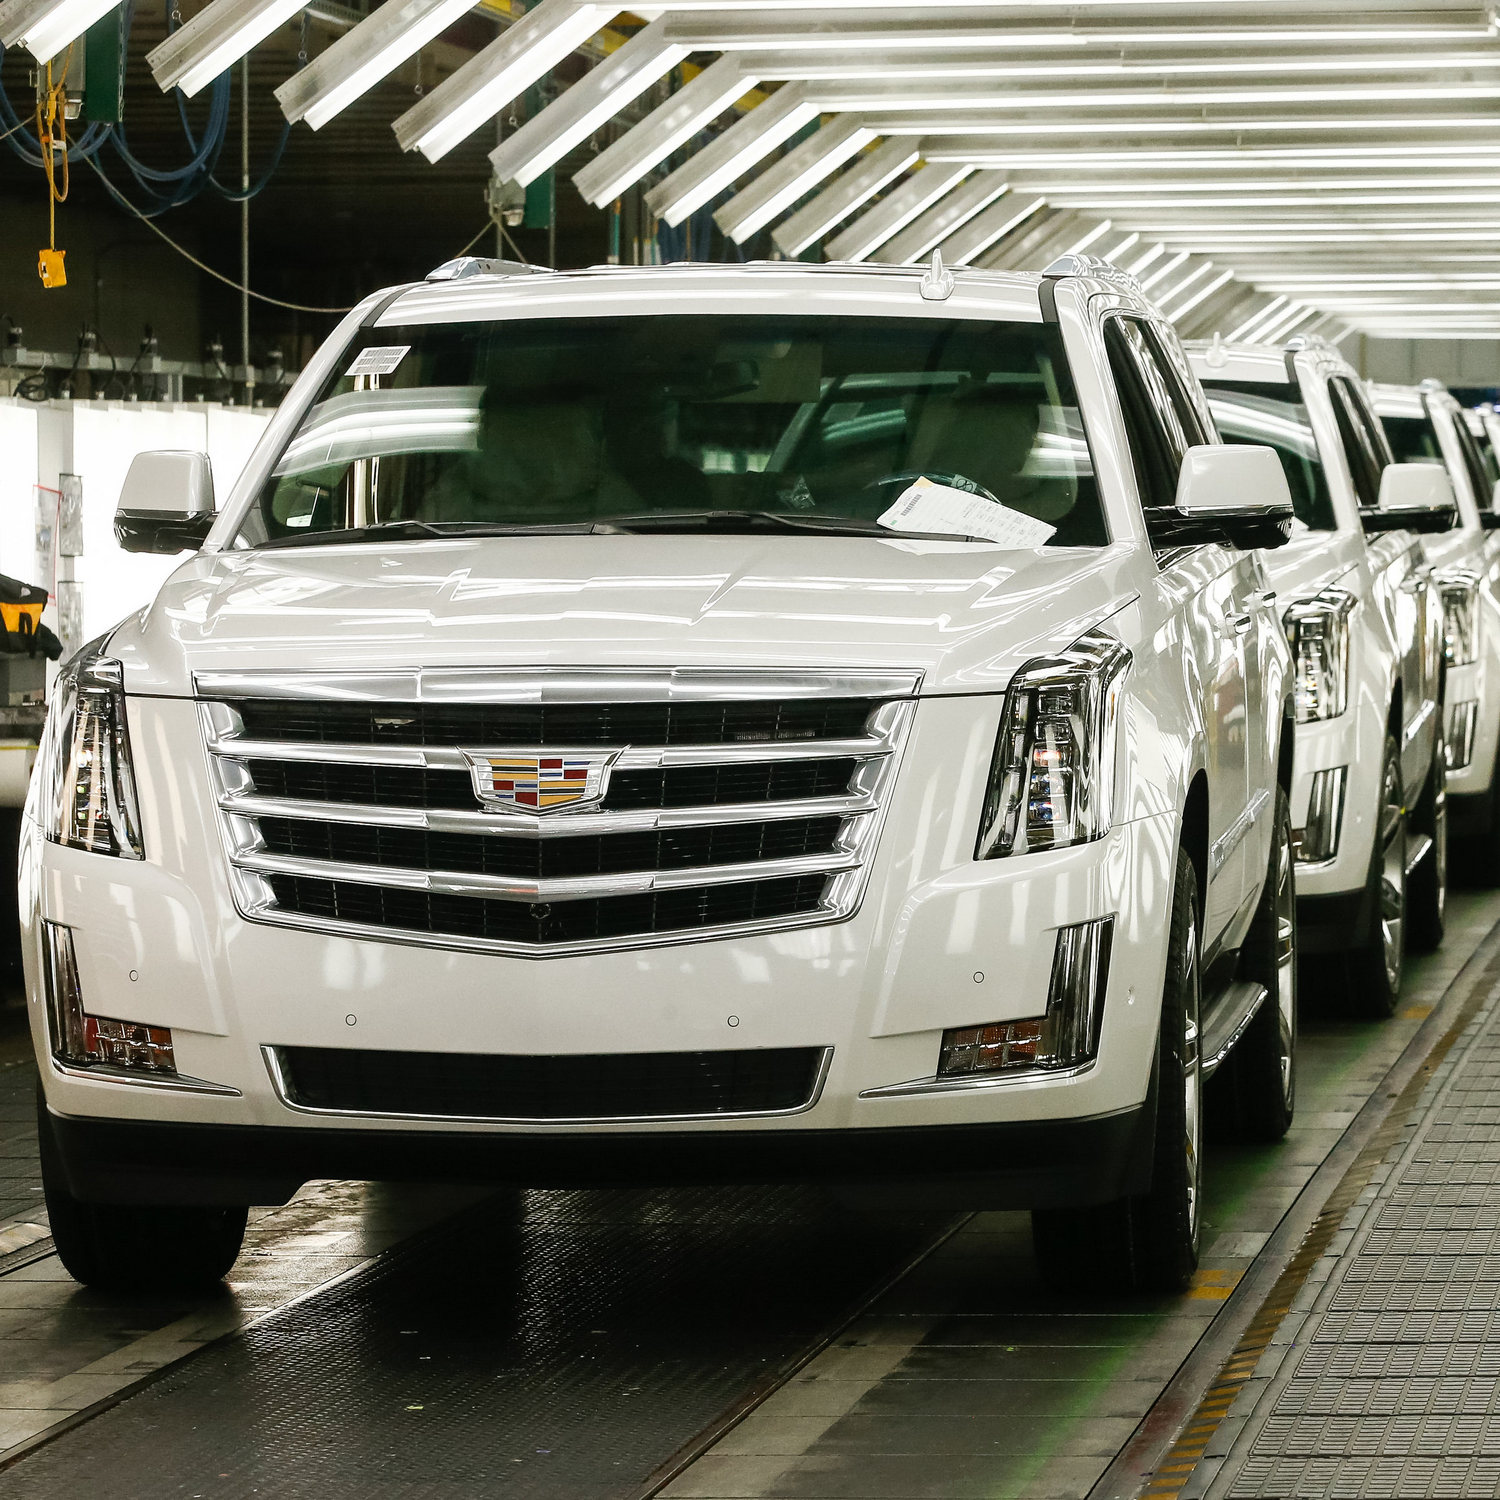 A General Motors 2035 után nem gyárt többé benzines vagy dízel autót